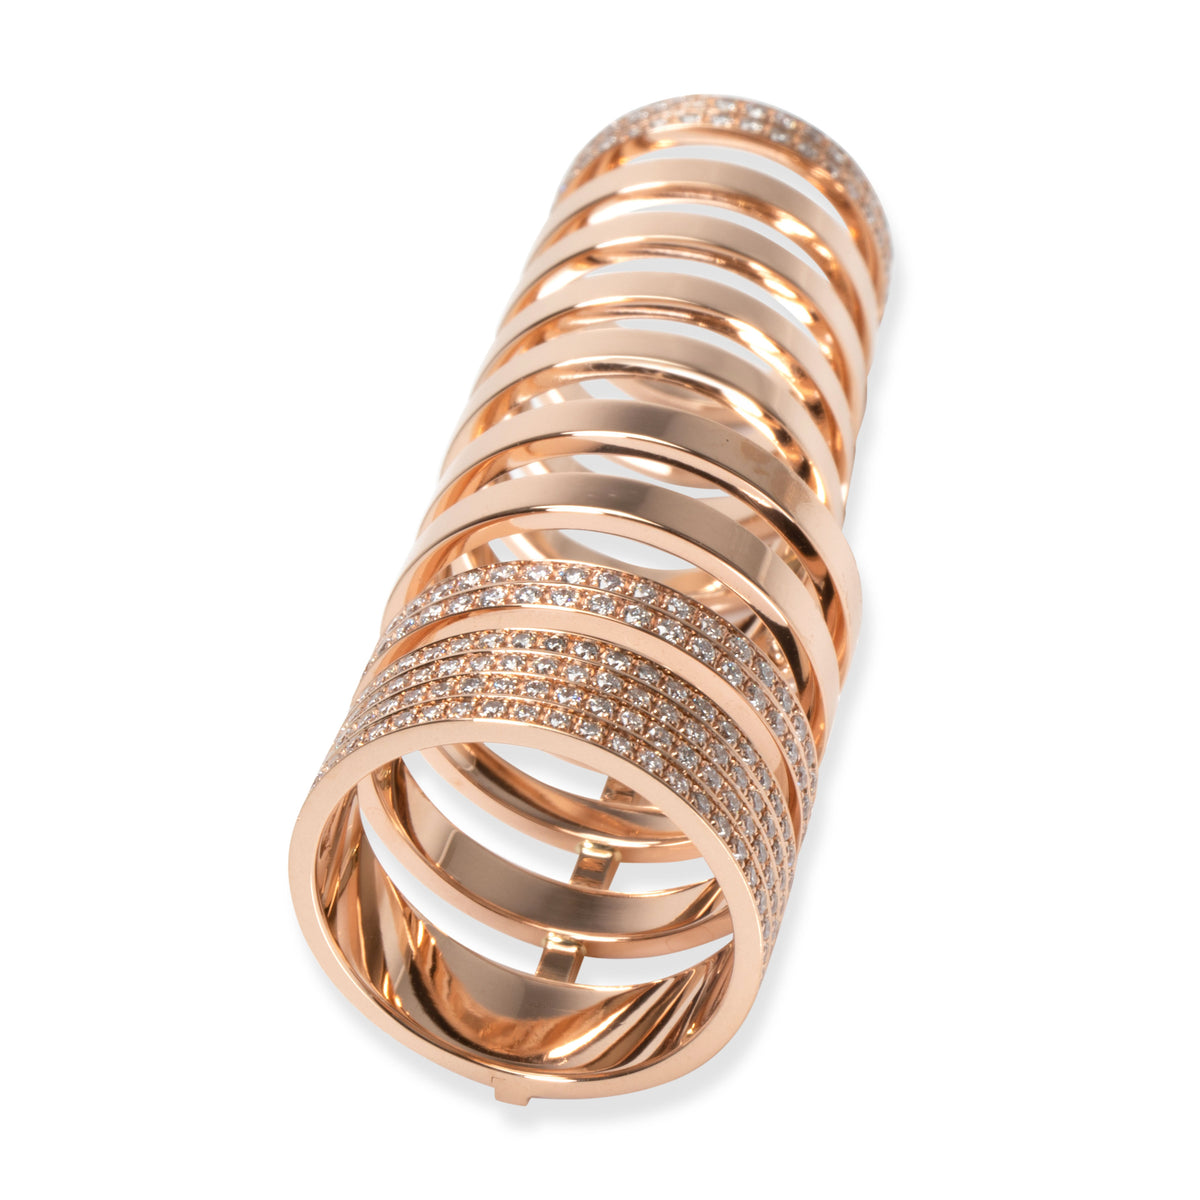 Repossi Berbere Diamond Ring in 18K Rose Gold 1.6 CTW